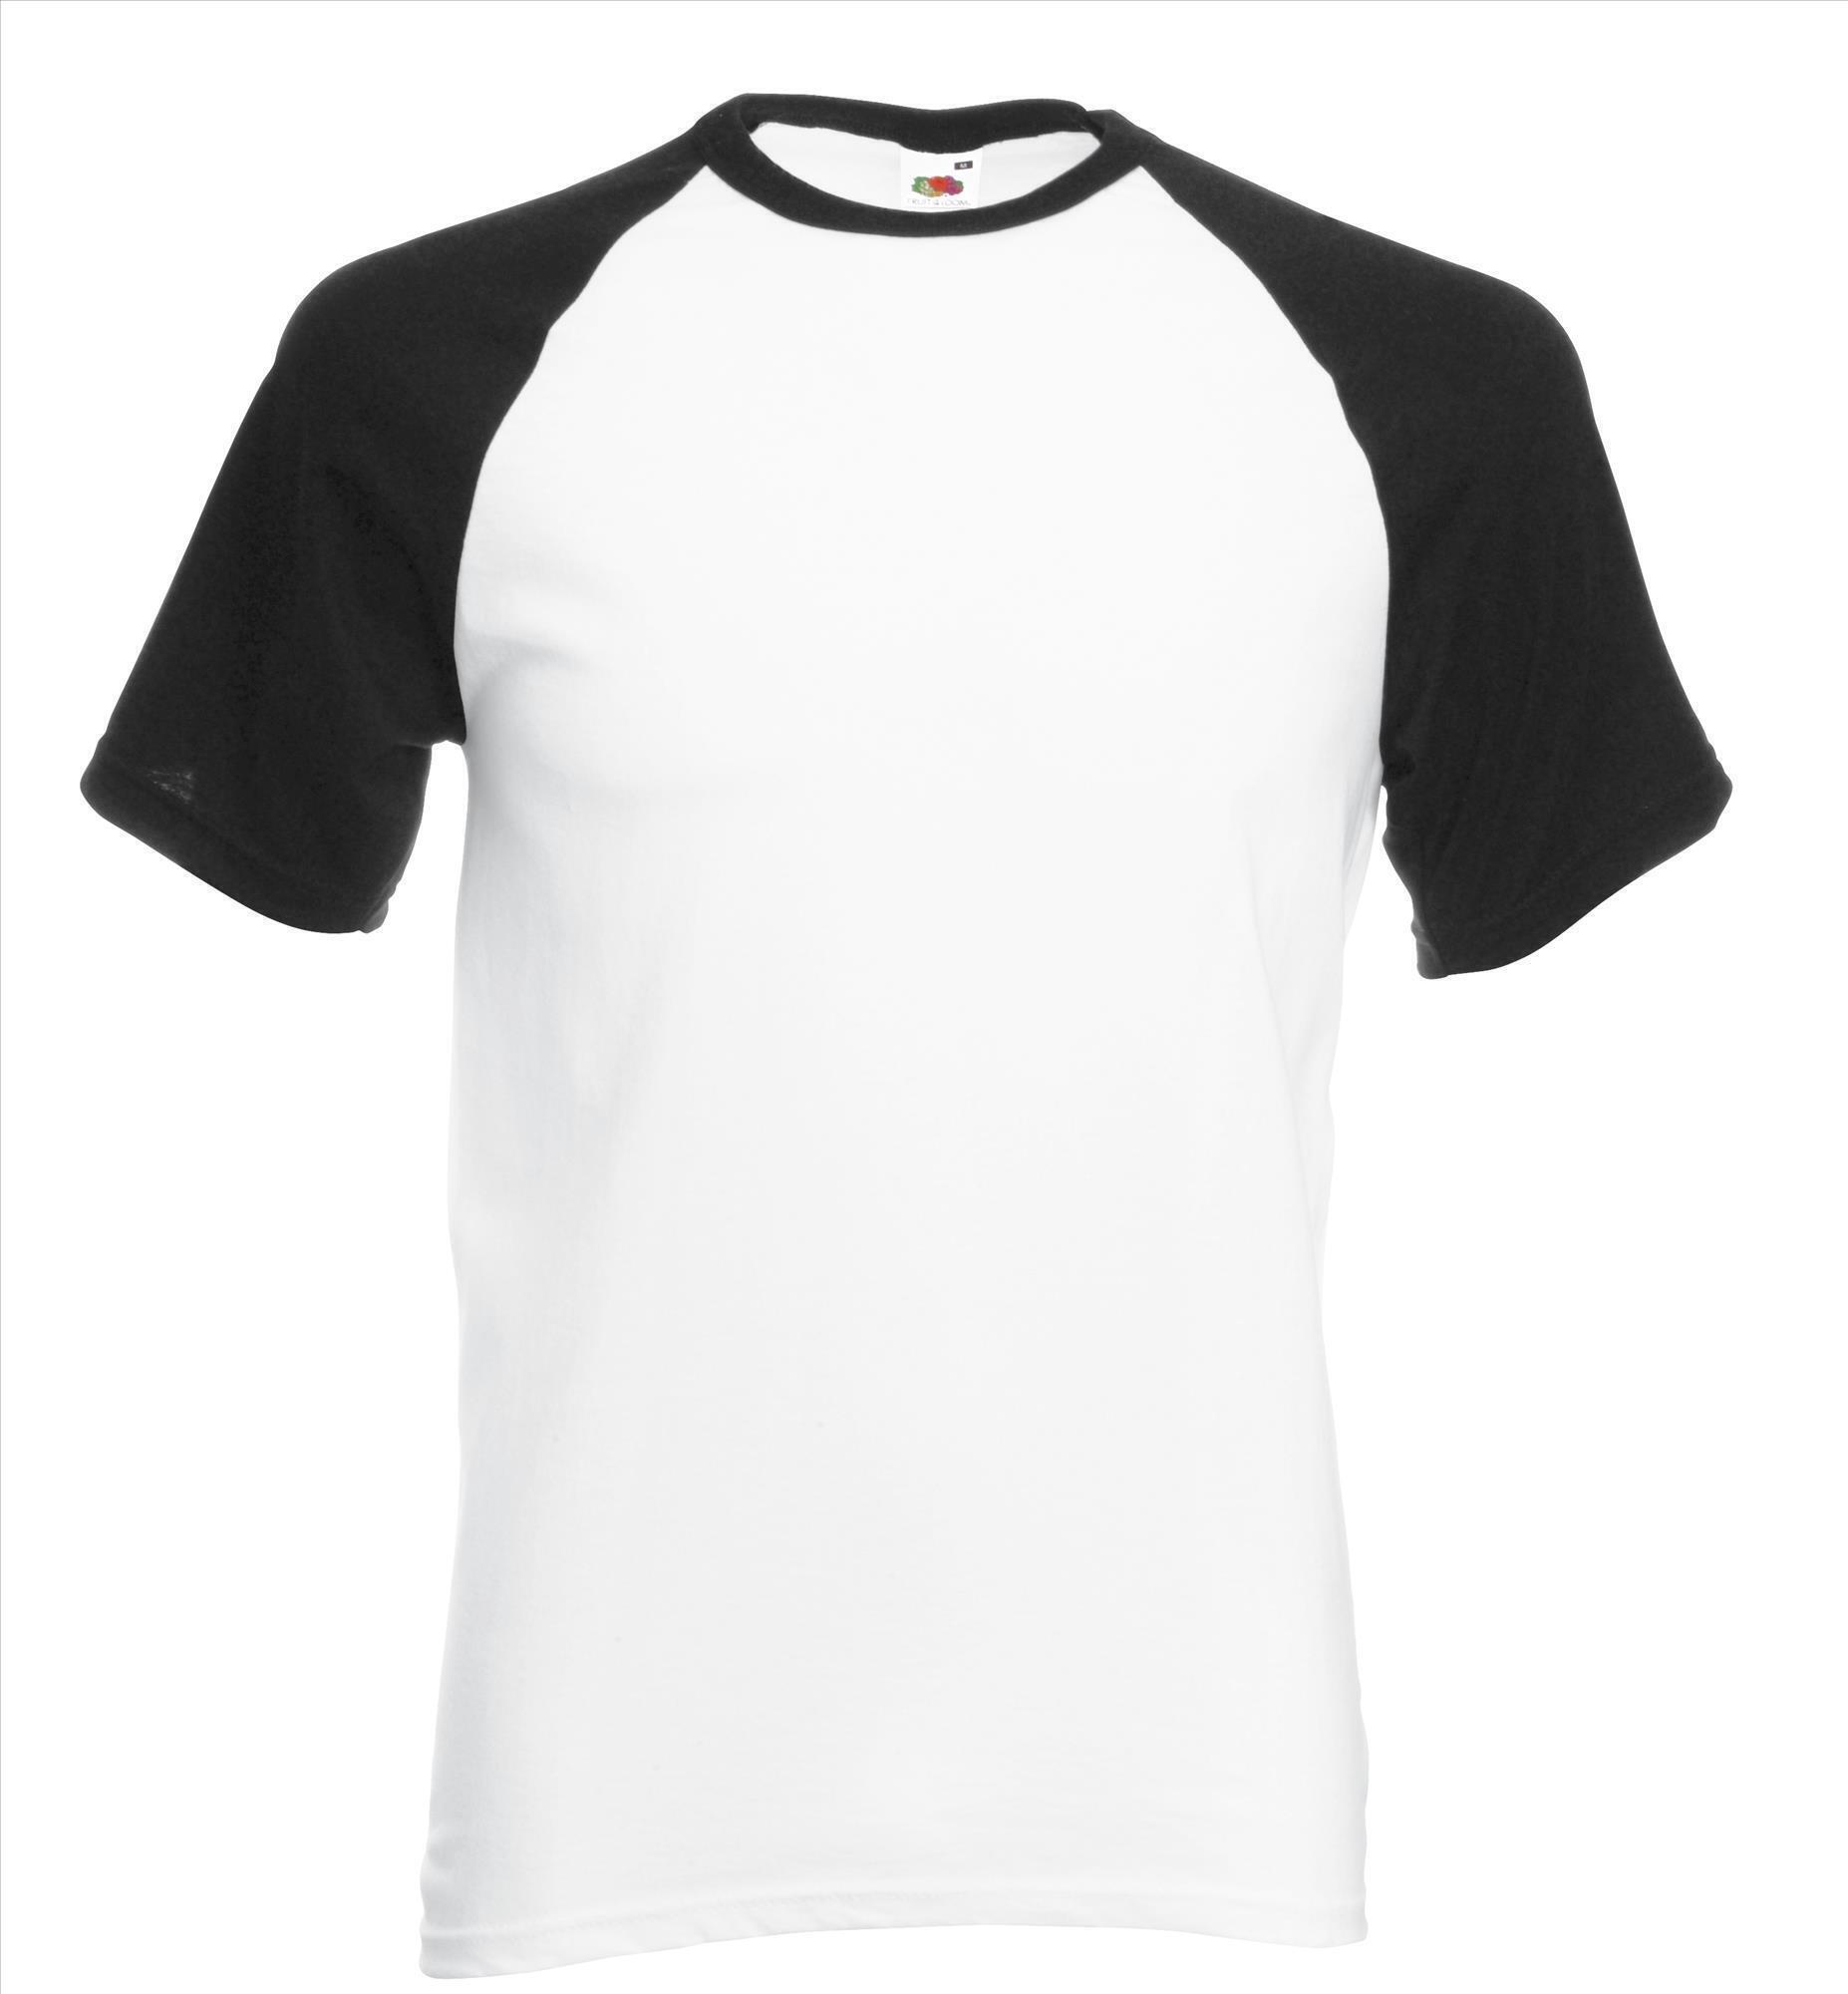 Heren T-shirt met raglanmouwen voor mannen wit met zwarte mouwen